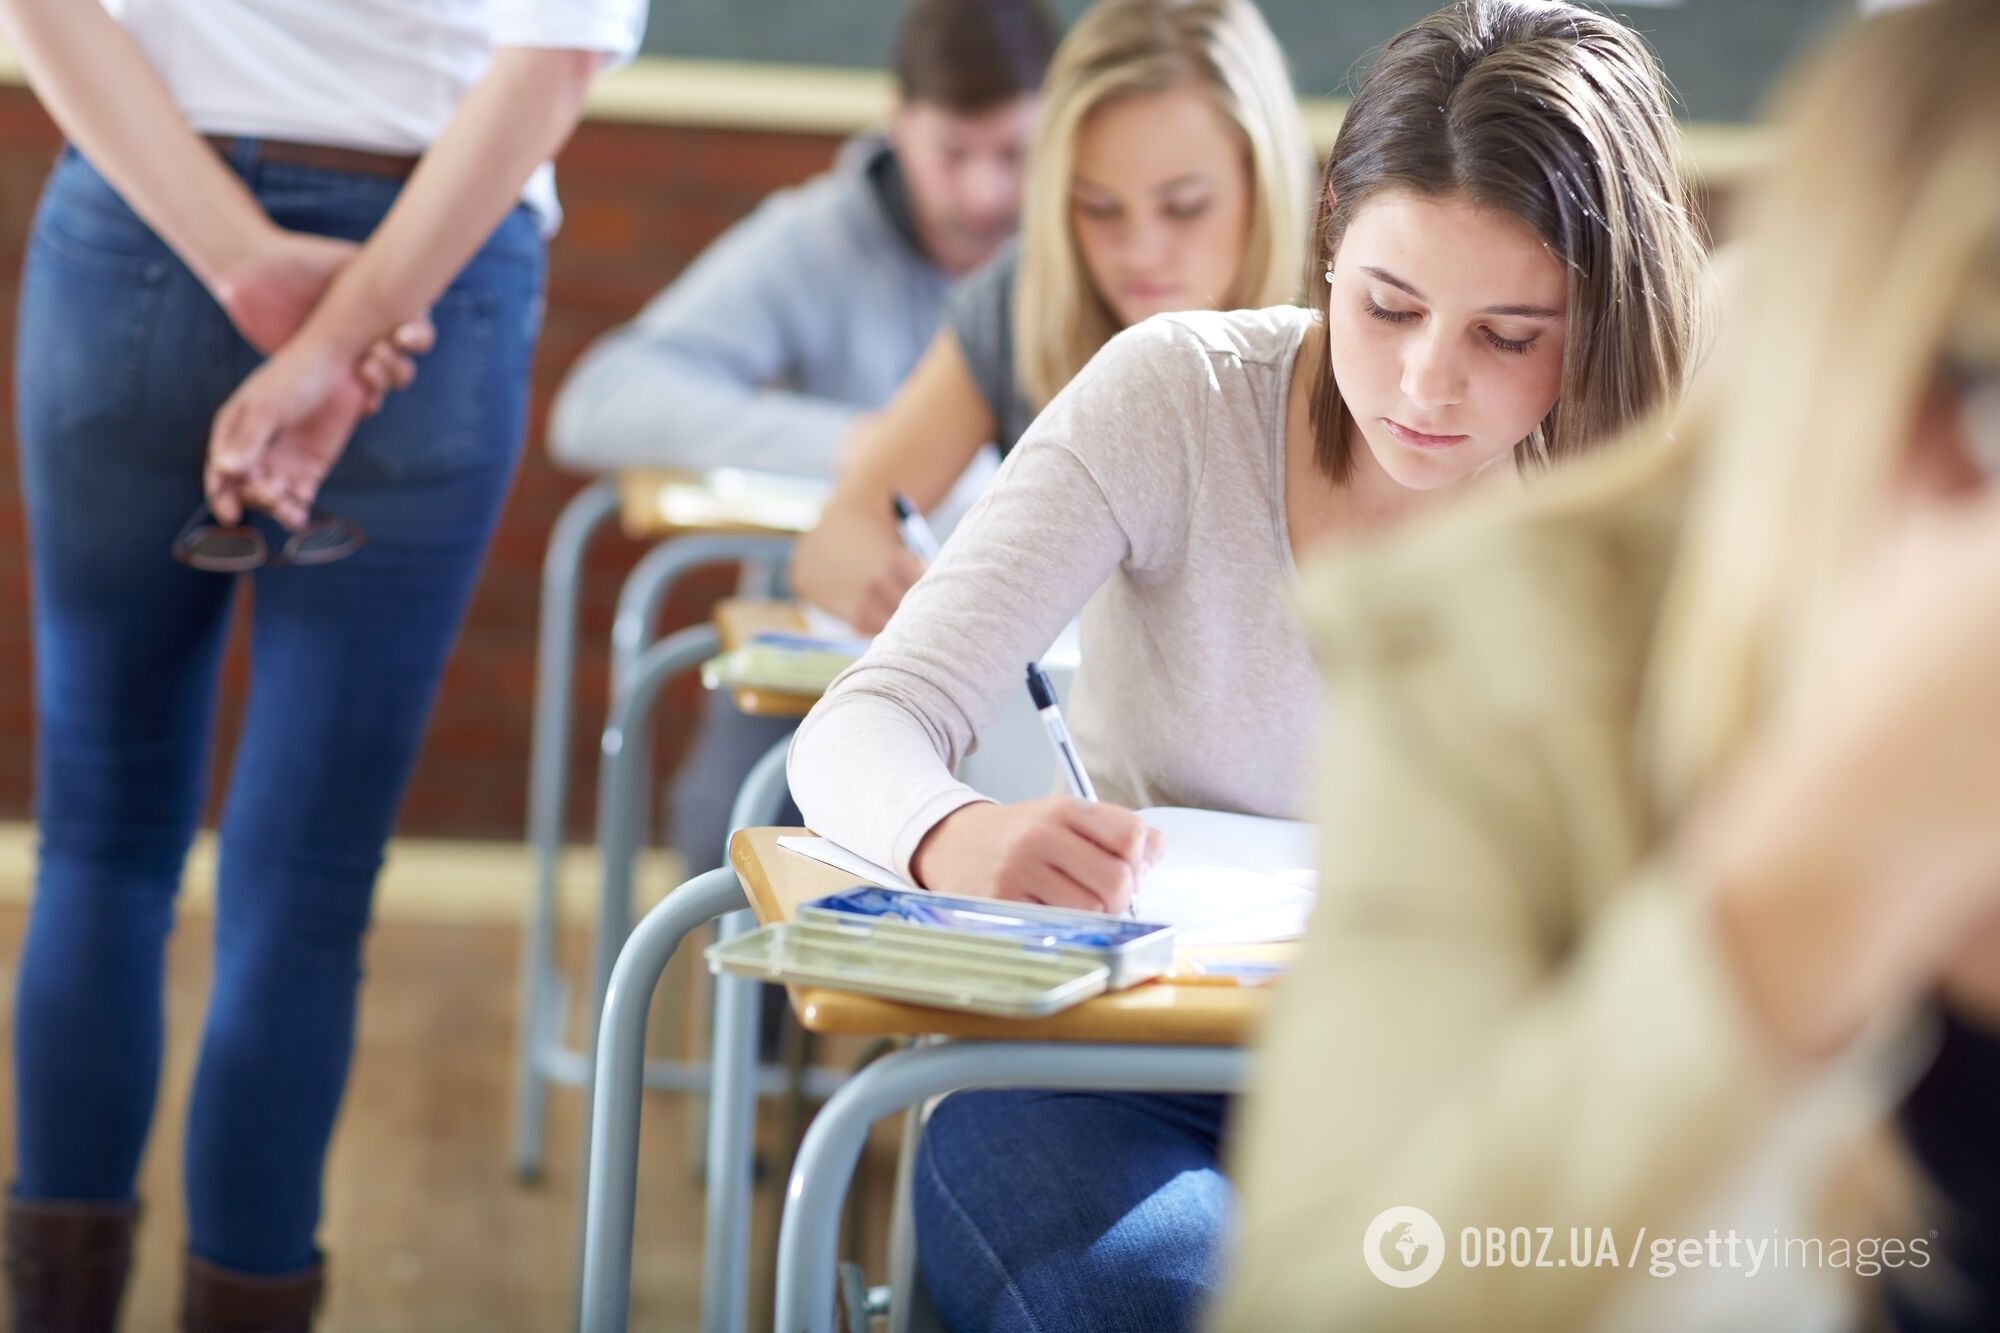 Экзамен будет достаточно жесткий: Винницкий рассказал, к чему готовиться поступающим в магистратуру и аспирантуру